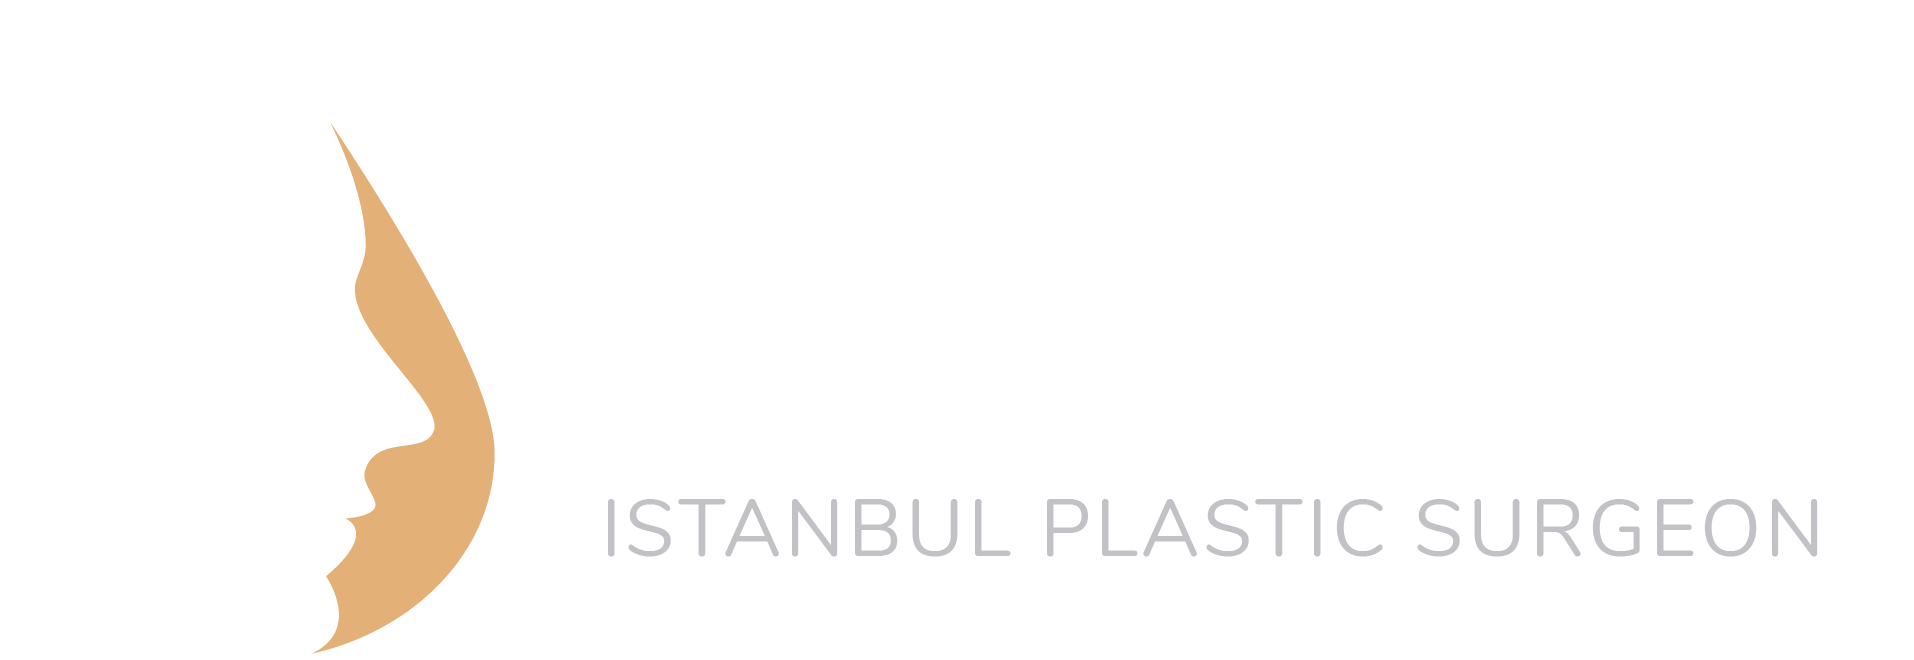 logodark-istanbulplasticsurgeon